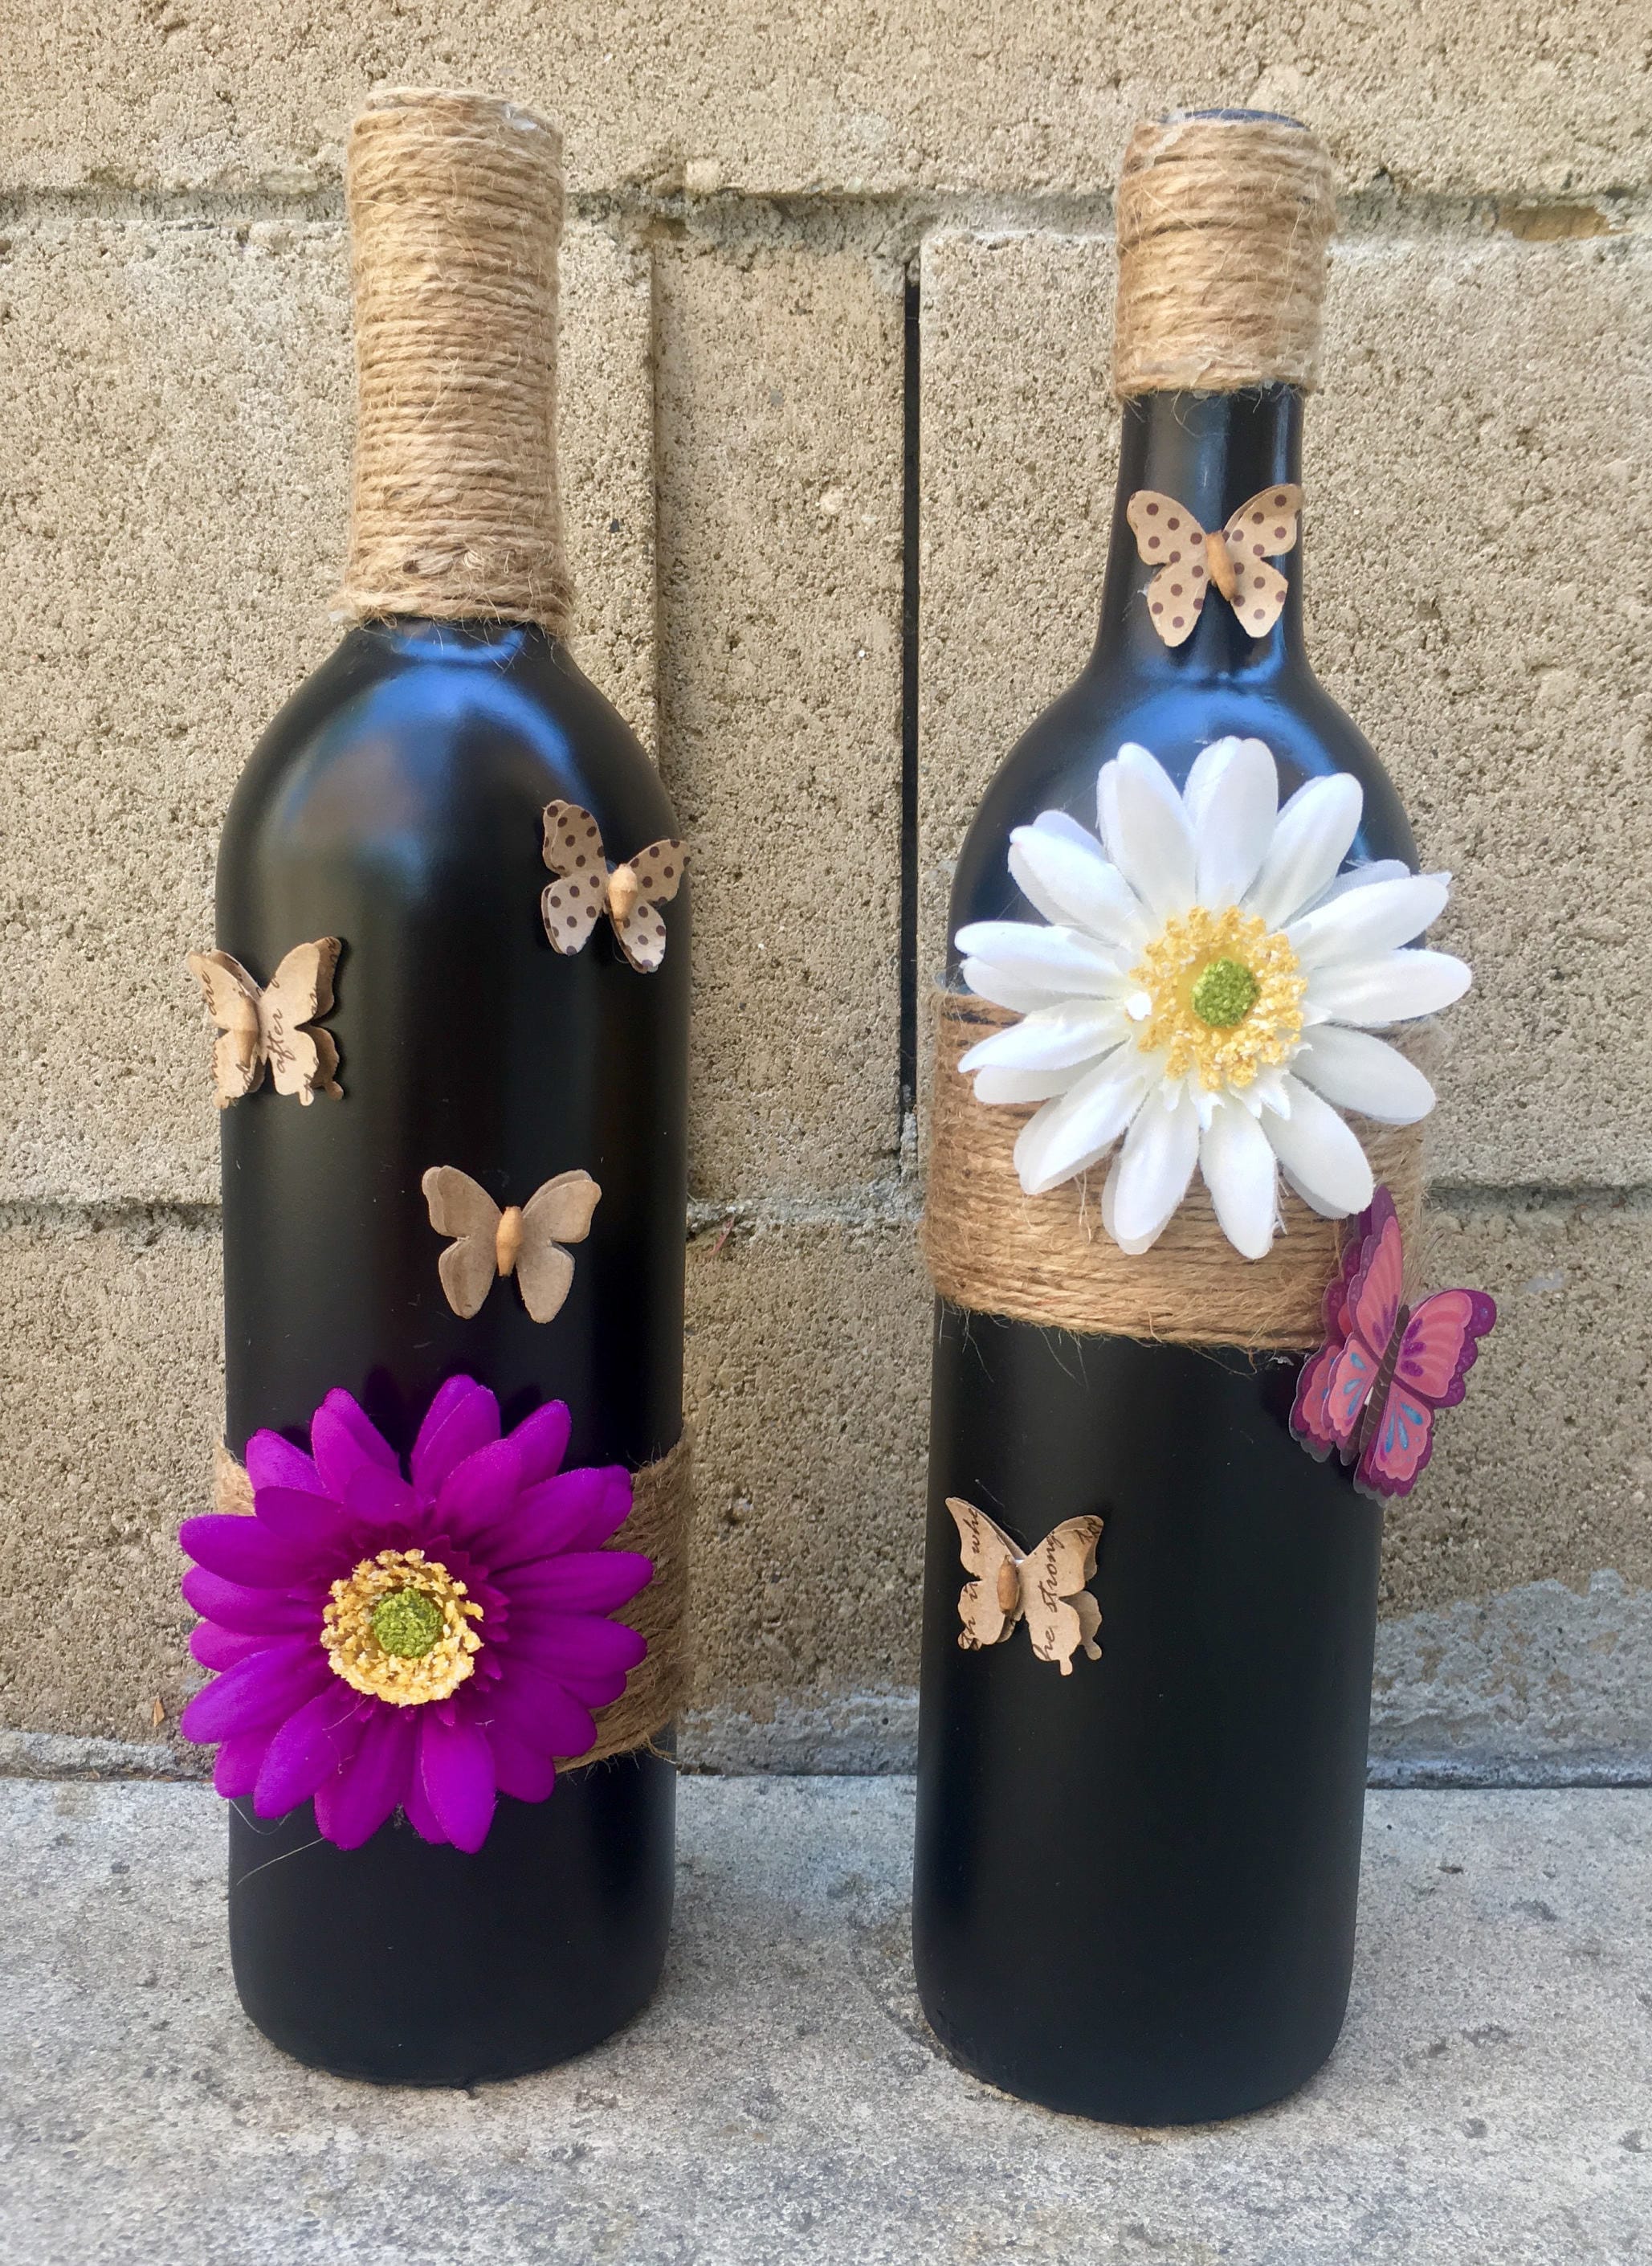 DIY wine bottle crafts. - The V Spot